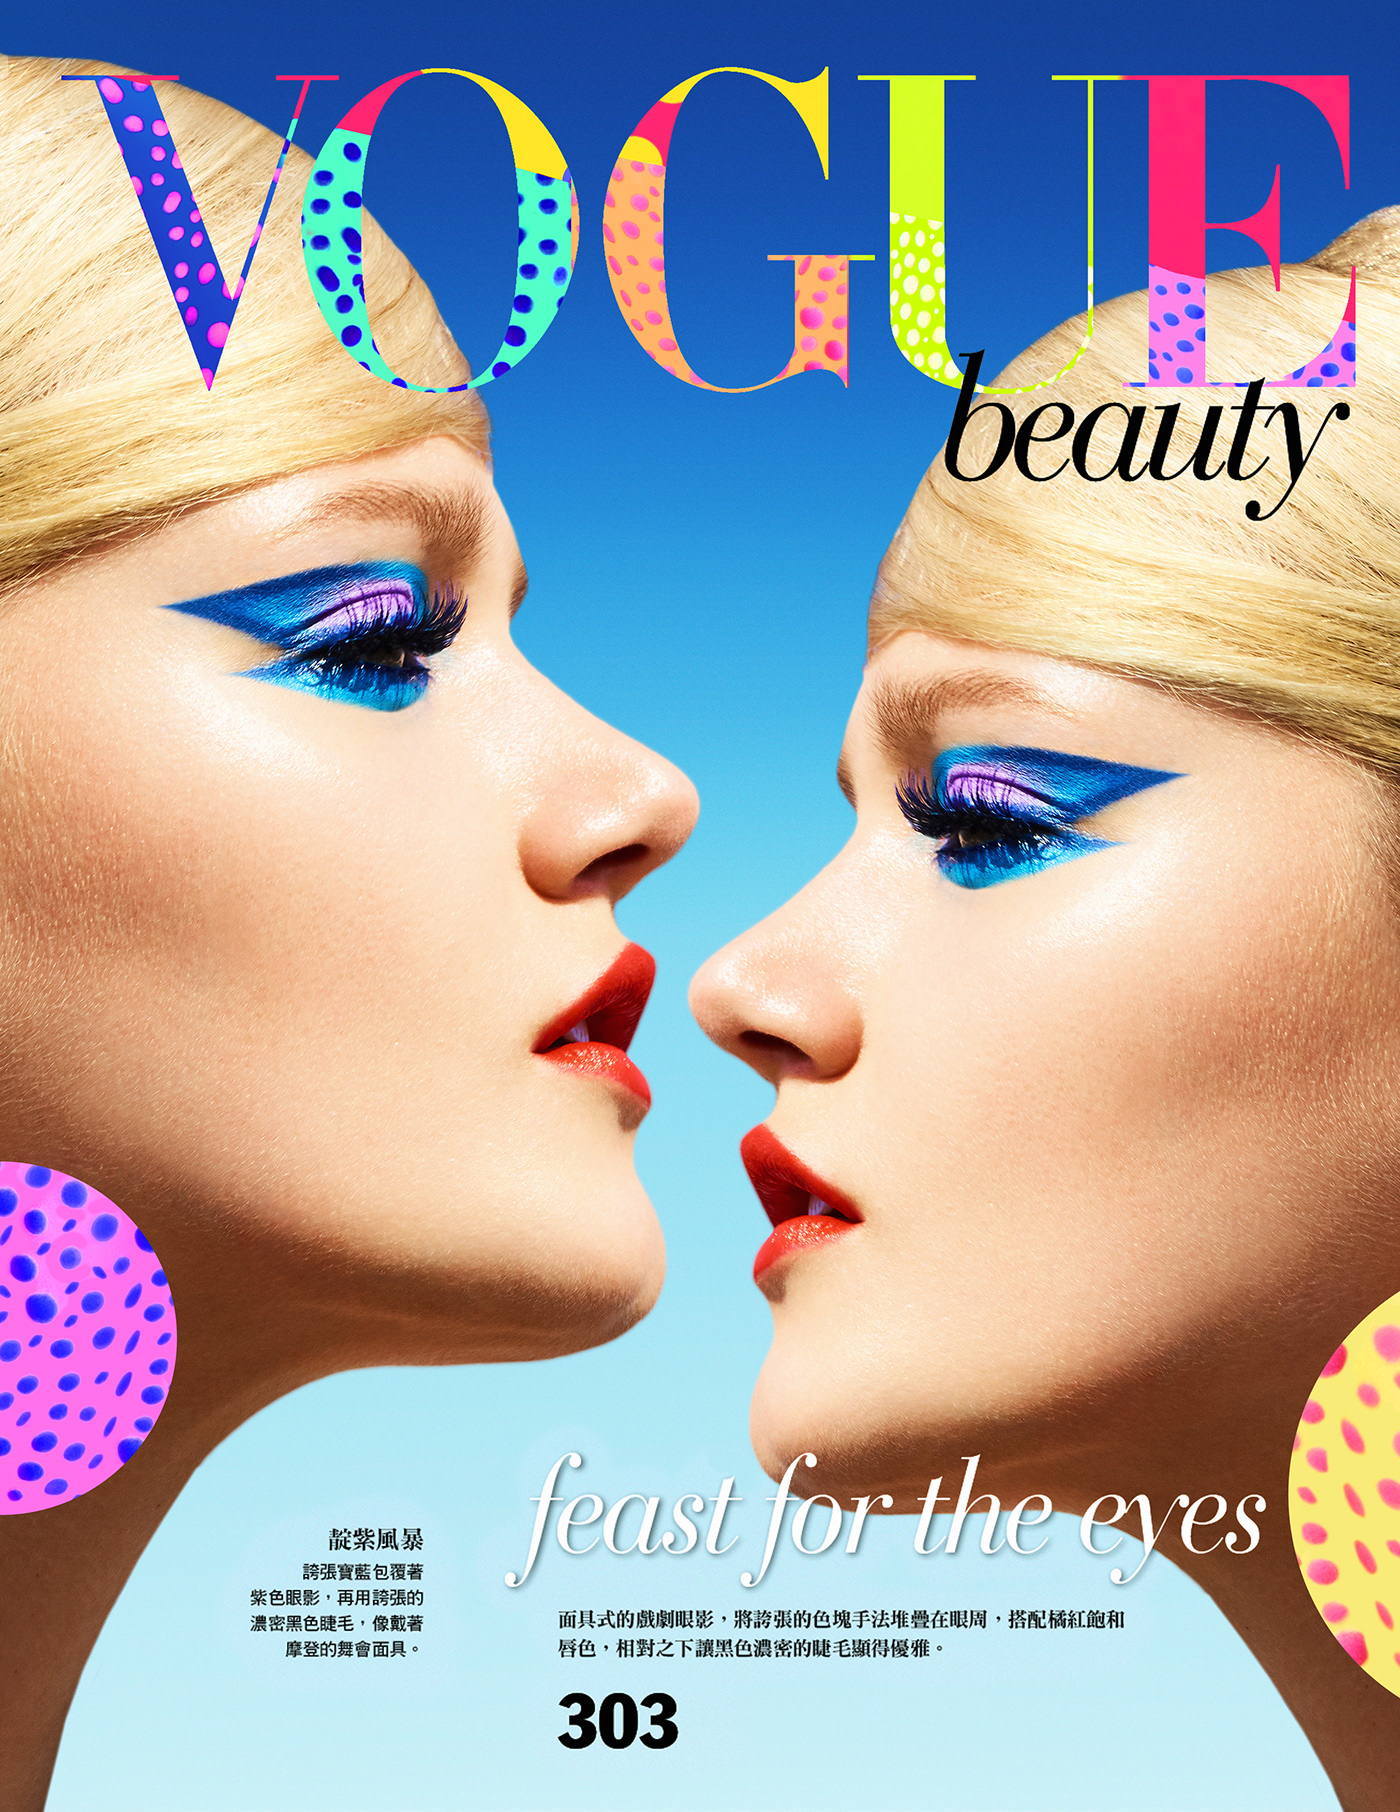 vogue Vogue Beauty Vogue Cover 60's Retro beauty twiggy BEAUTY PHOTOGRAPHER Enrique Vega color